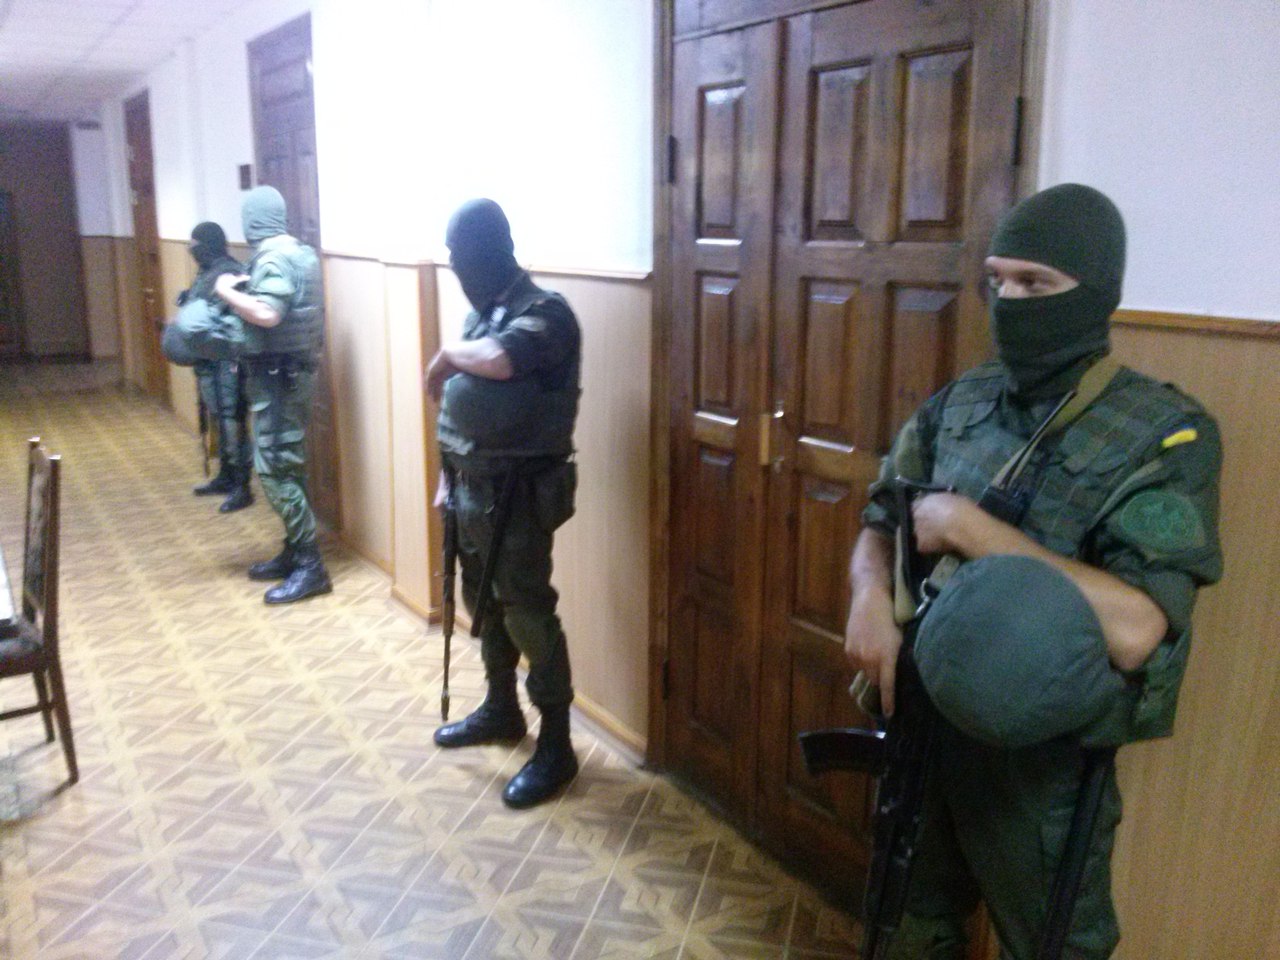 Неля Штепа с новыми кудрями на голове в суде Харькова